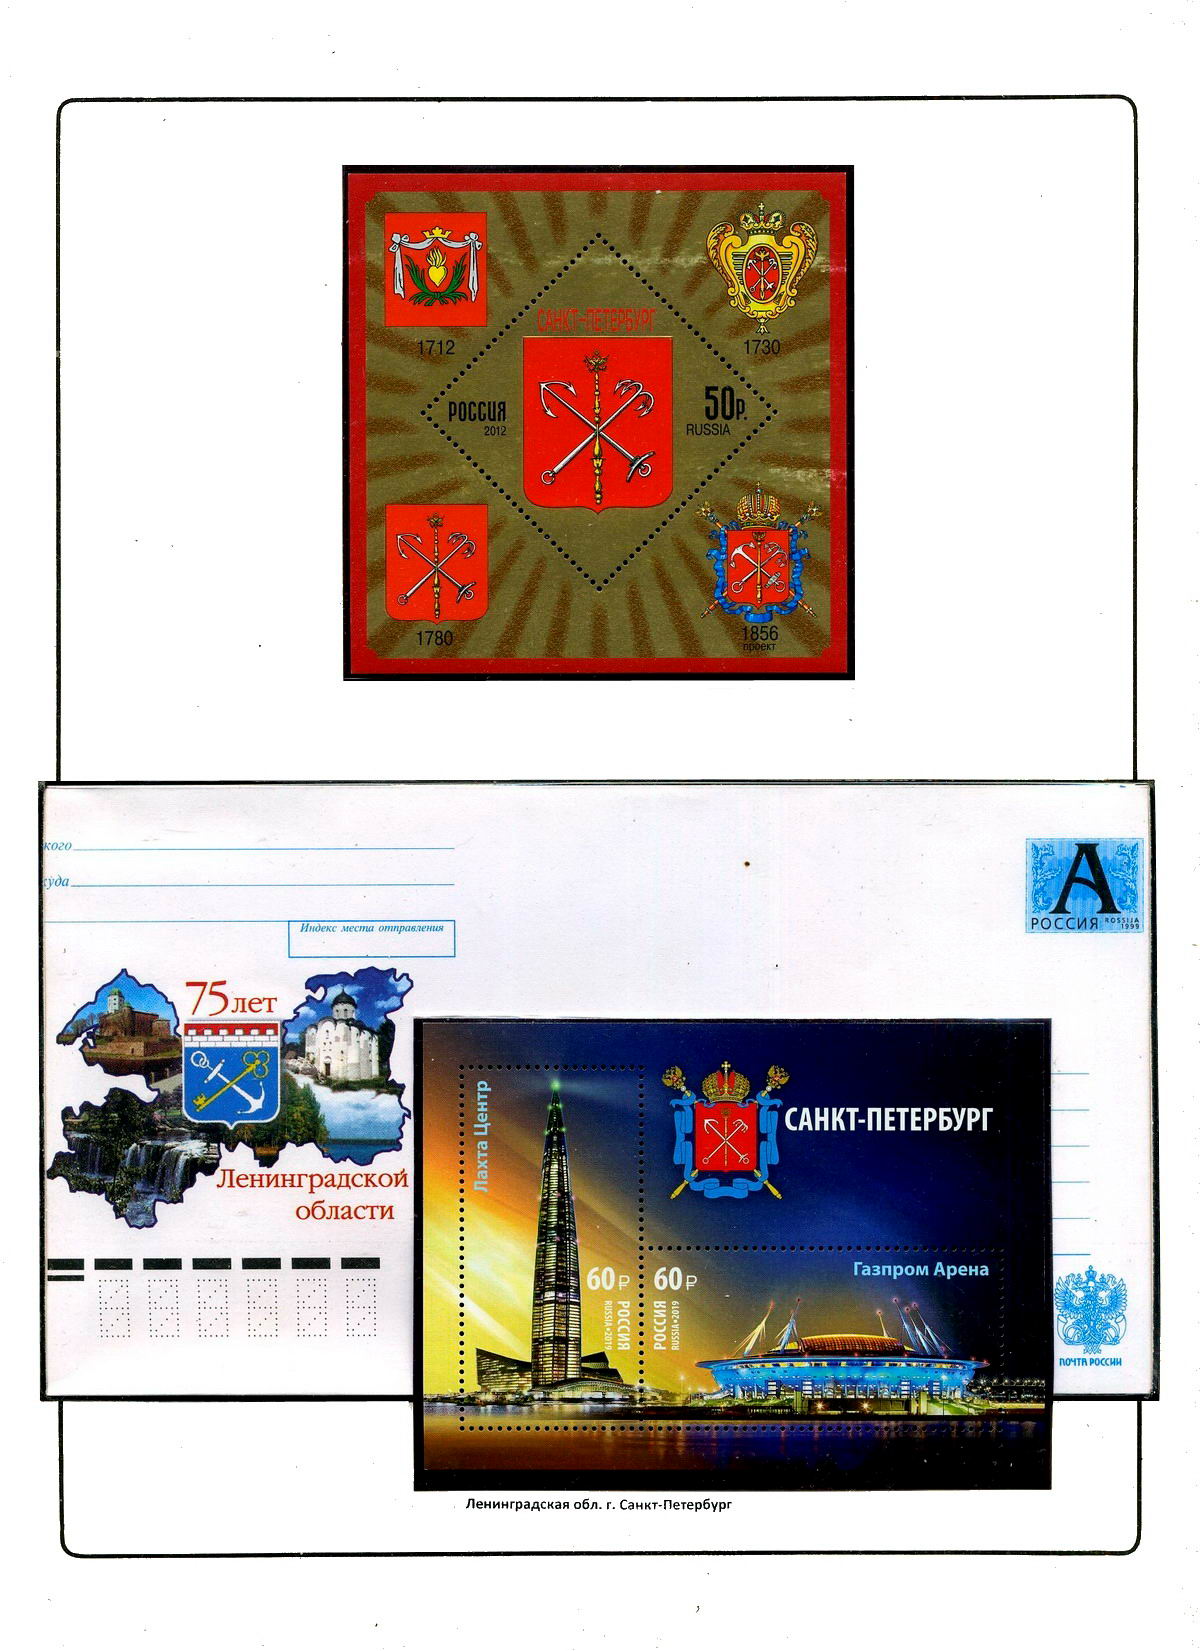 Гербы стран и городов на почтовых марках Хорн Гаага Геральдика в филателии